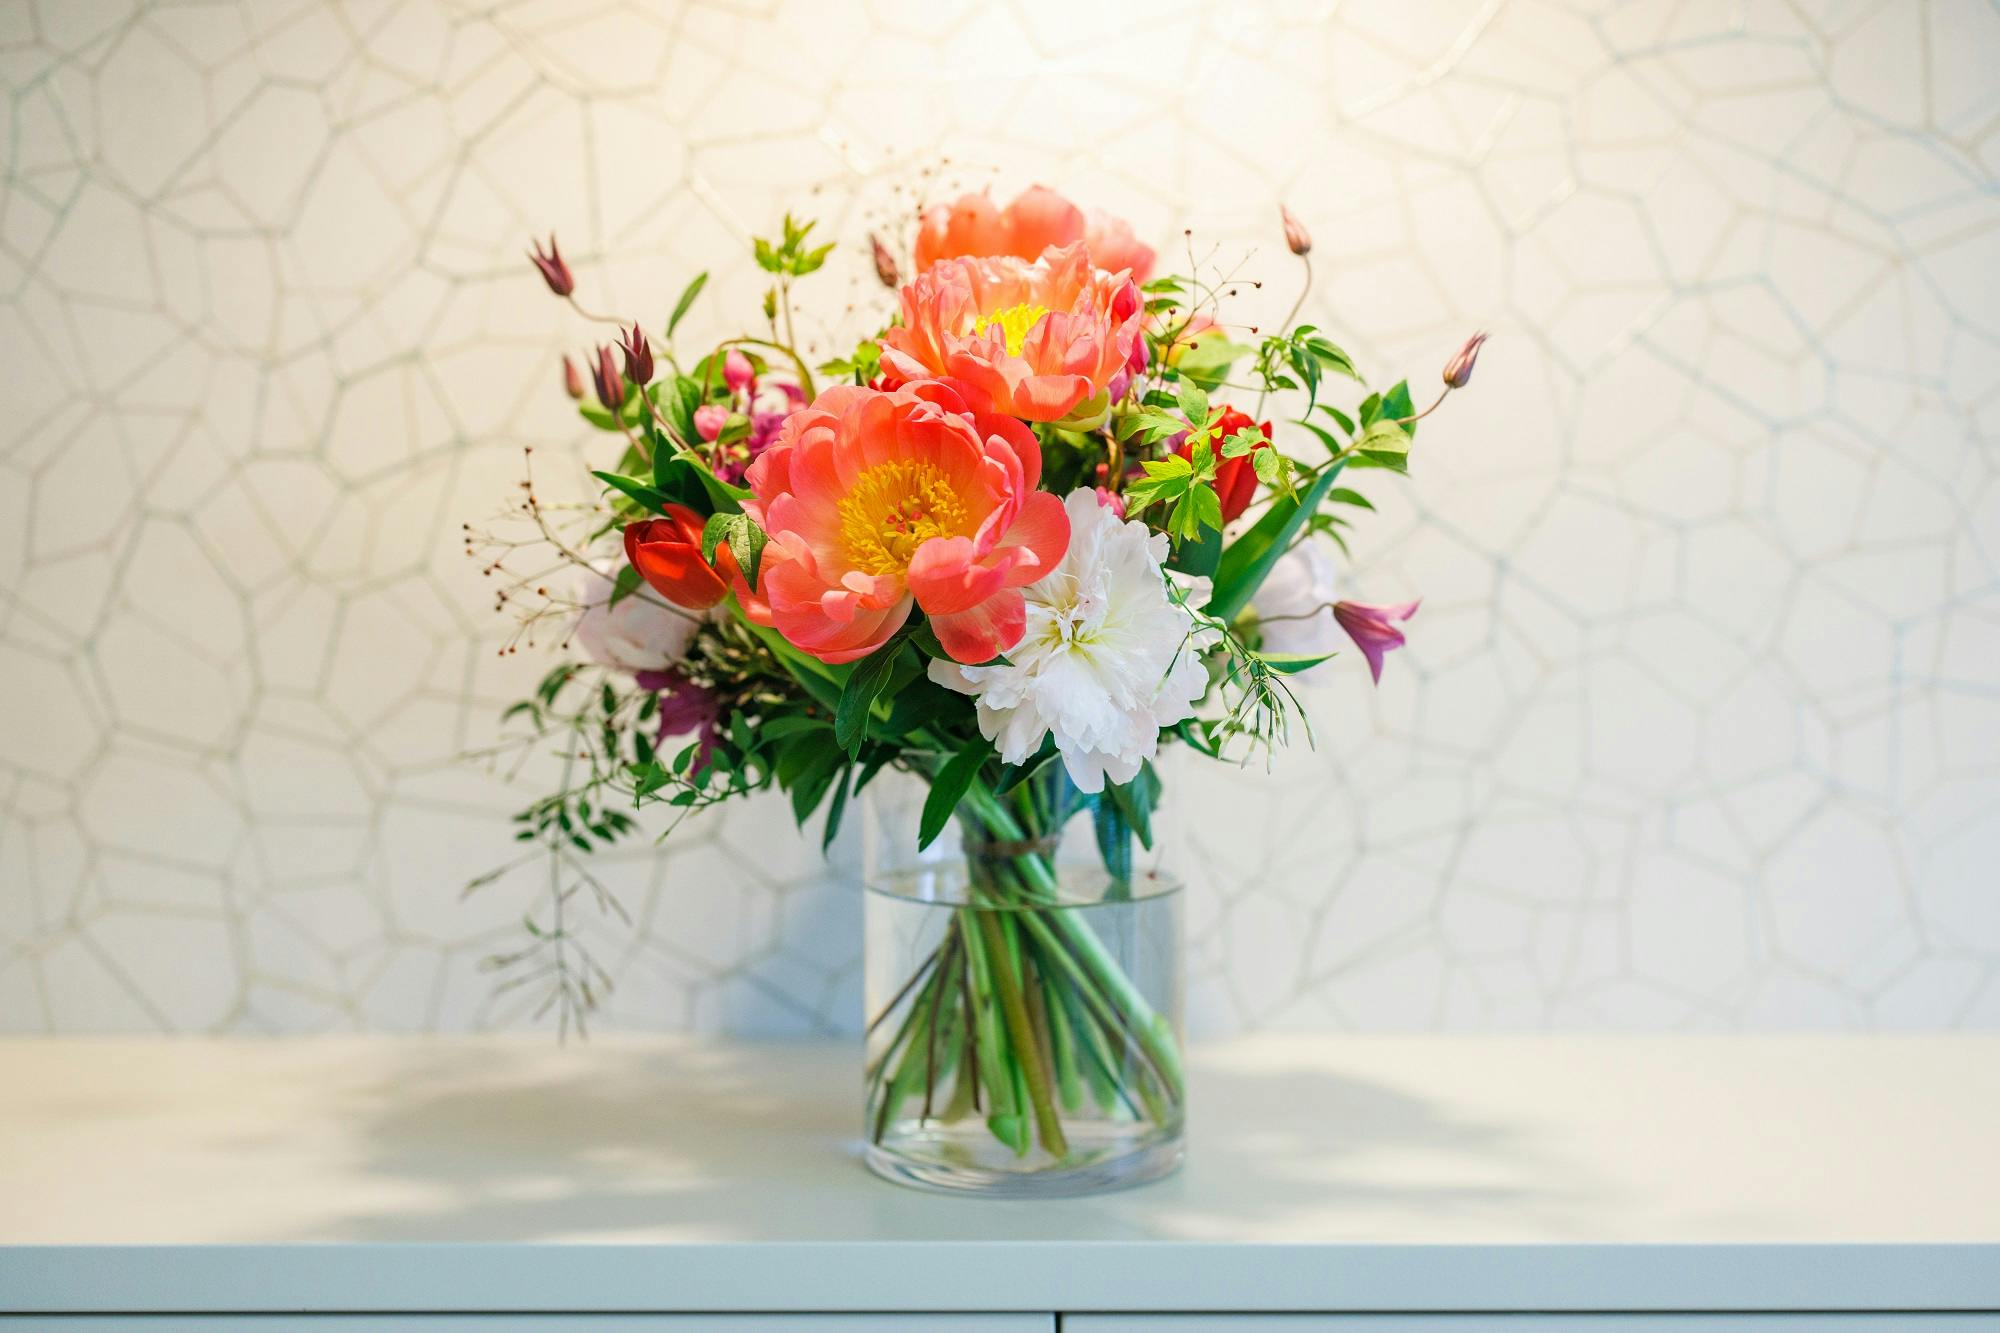 Bunter Blumenstrauß in einer Glasvase auf einem weißen Tisch vor Mosaik-Hintergrund.